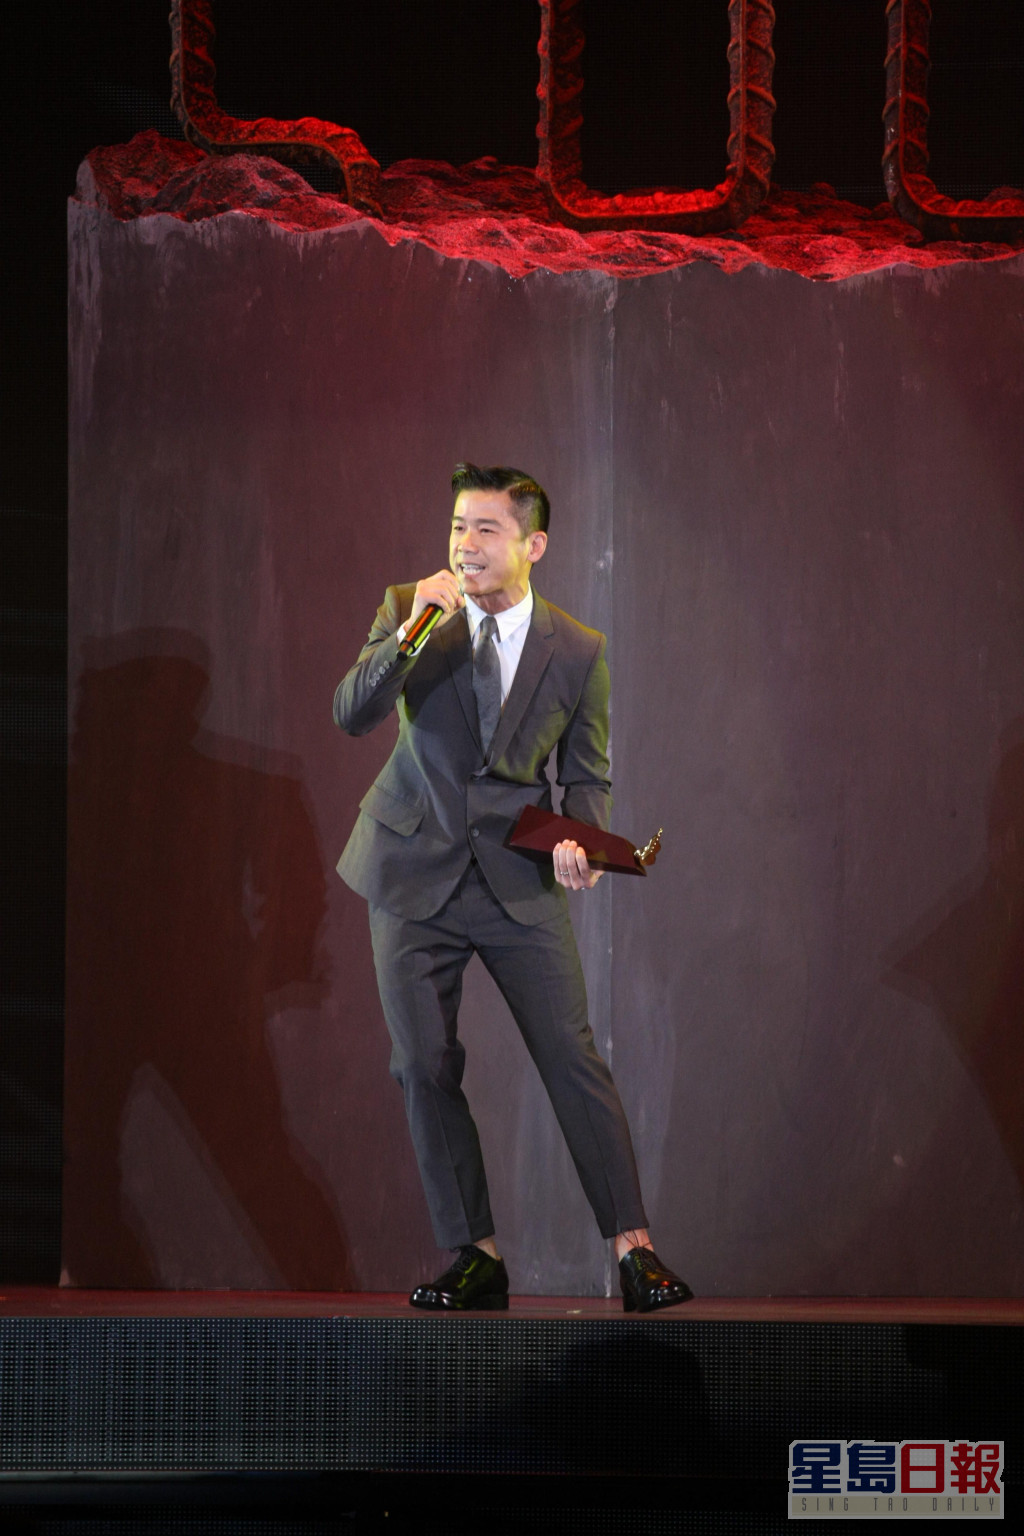 林海峰在「叱咤樂壇流行榜頒獎典禮」上多度奪獎。